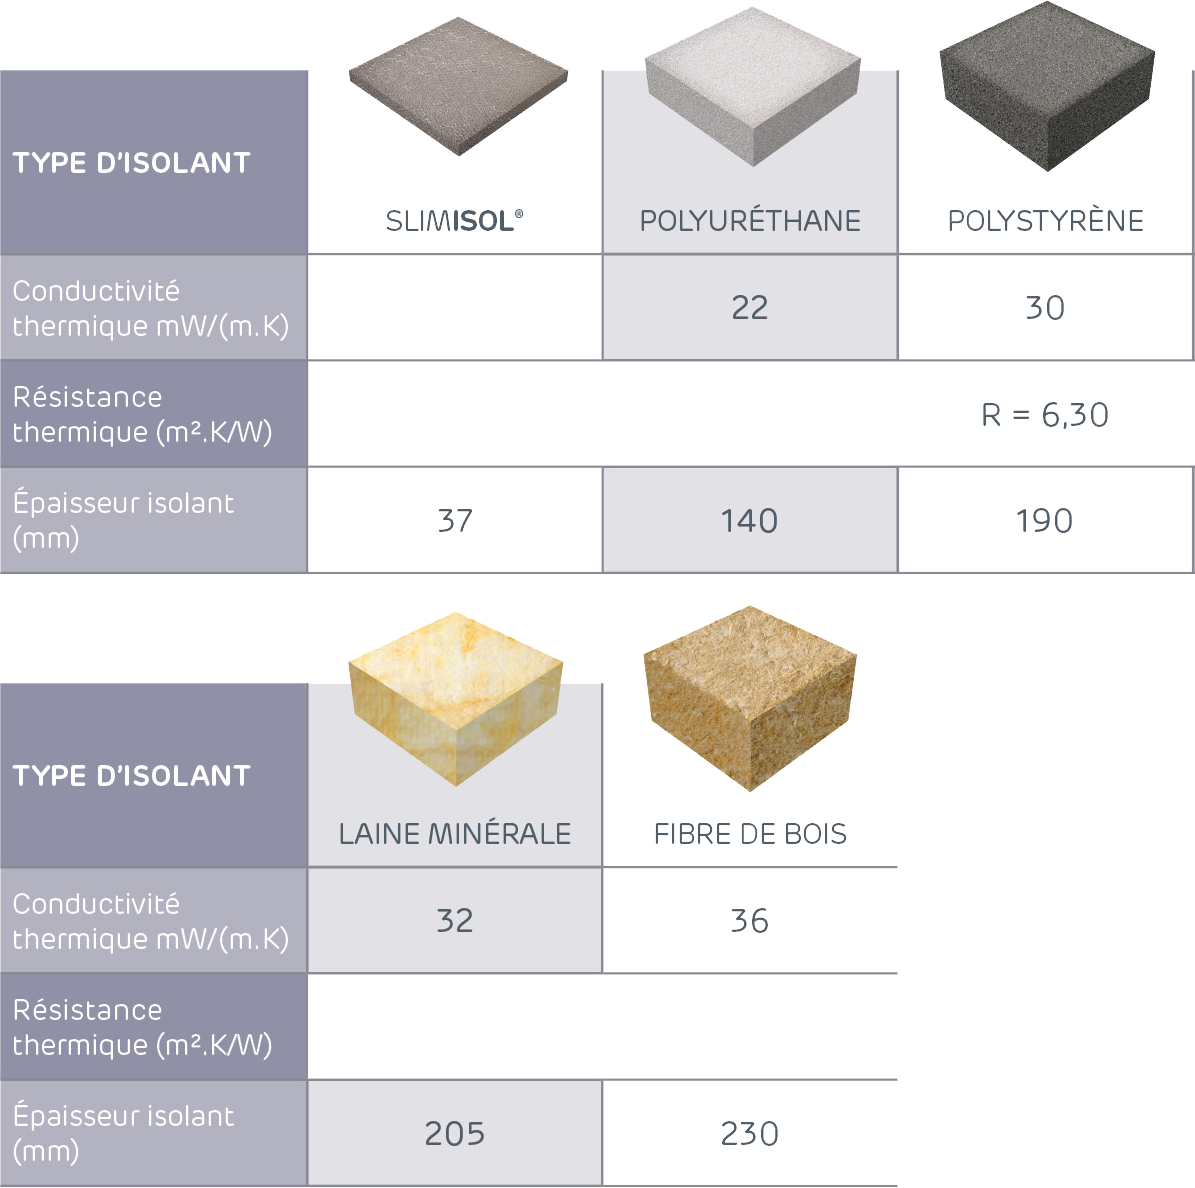 Comparaison des épaisseurs d'isolants pour une résistance thermique de 6,3m².K/W : SLMISOL (37mm), polyuréthane (140mm), polystyrène (190mm), laine minérale (205mm) et fibre de bois (230mm)